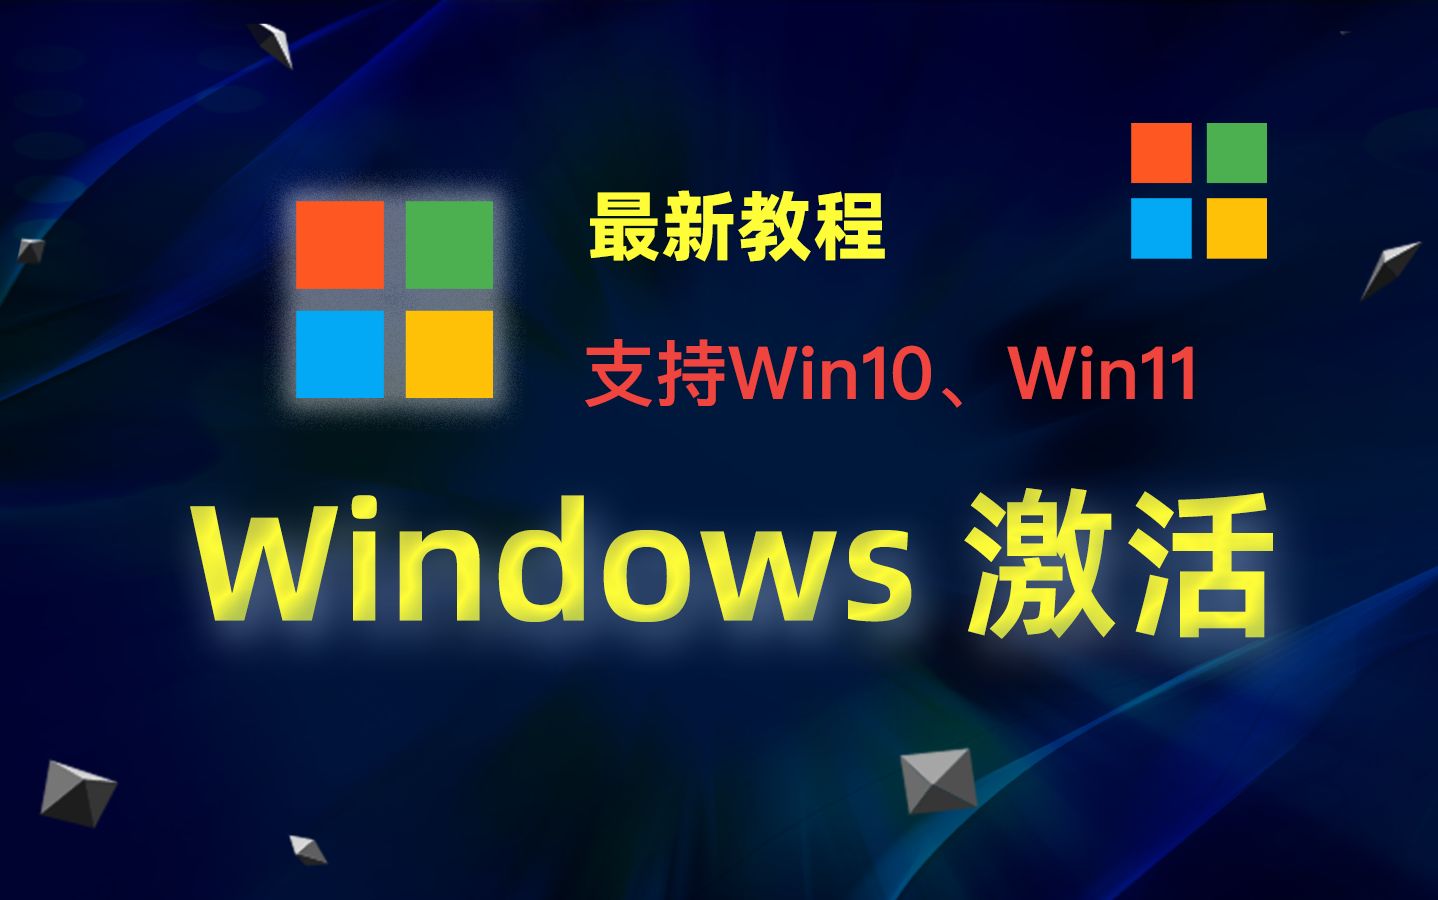 Windows10、Windows11 激活教程